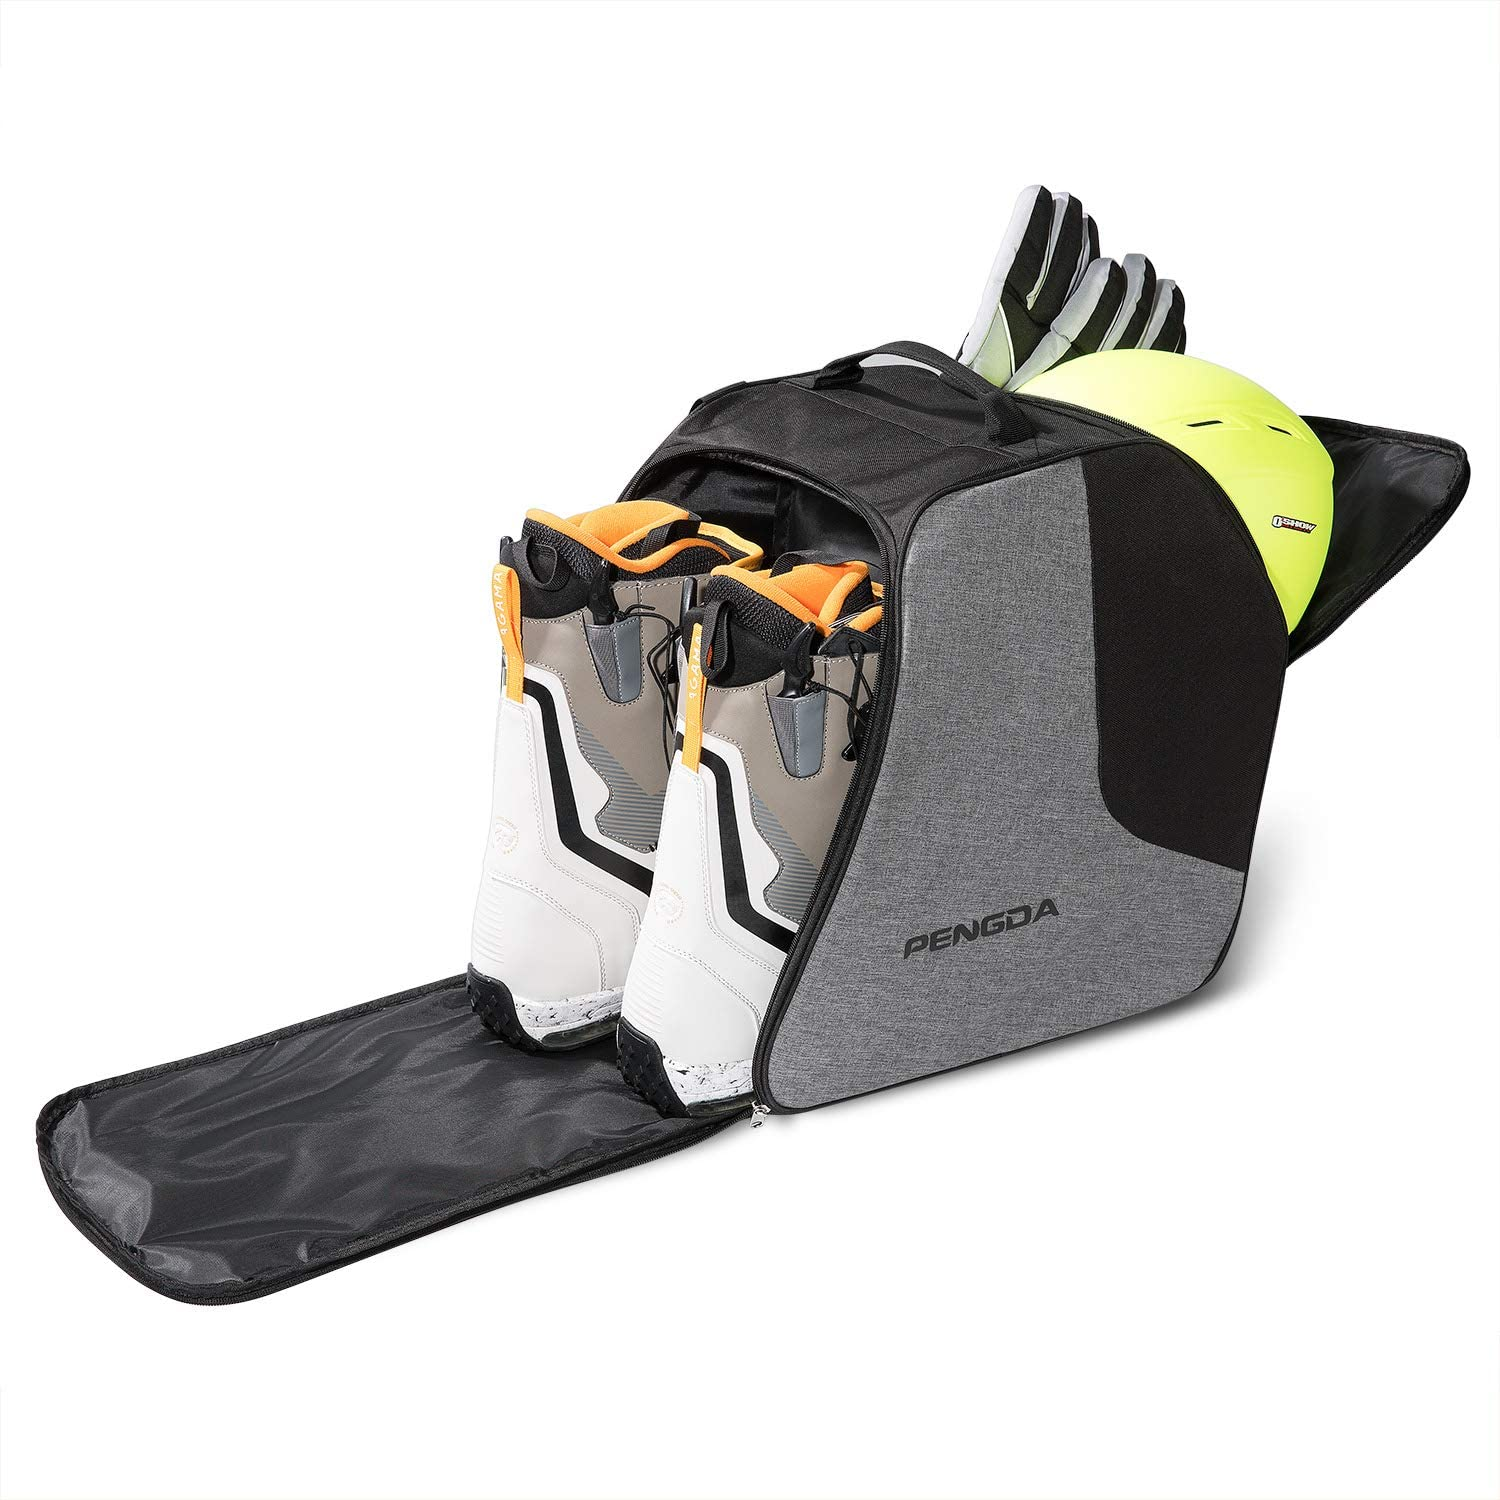 即納-96時間限定 【送料無料】Ski Boot Bag-Snowboard Gear Boot Bag, Western Boot Bag Made  in USA. (Turquo【並行輸入品】